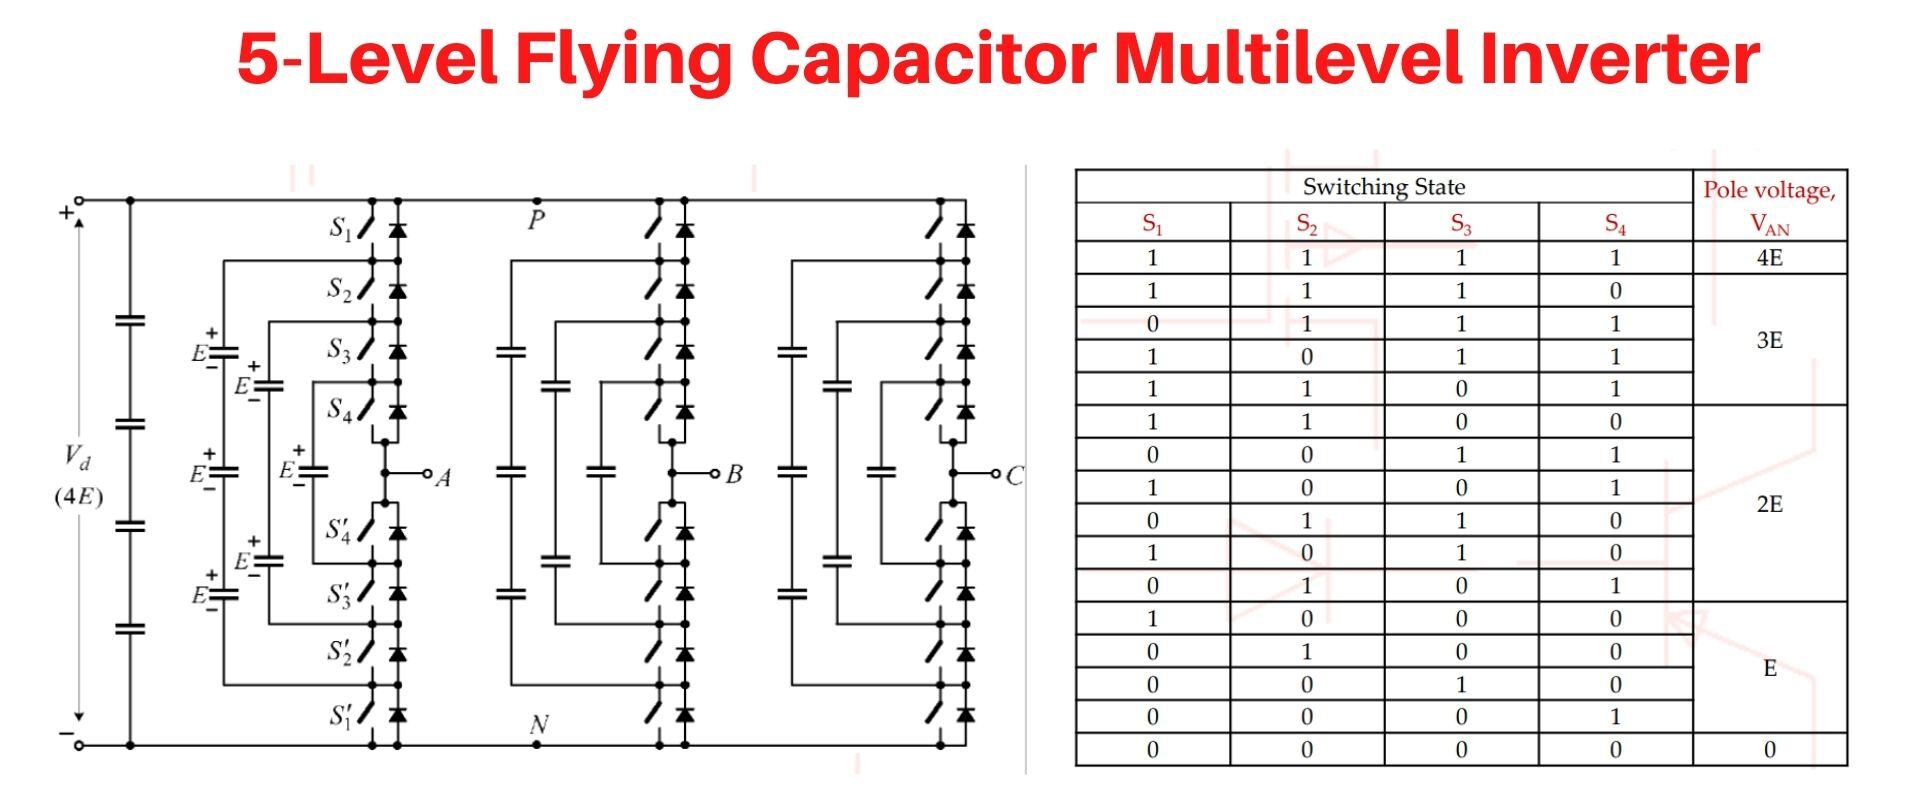 5-Level Flying Capacitor Multilevel Inverter